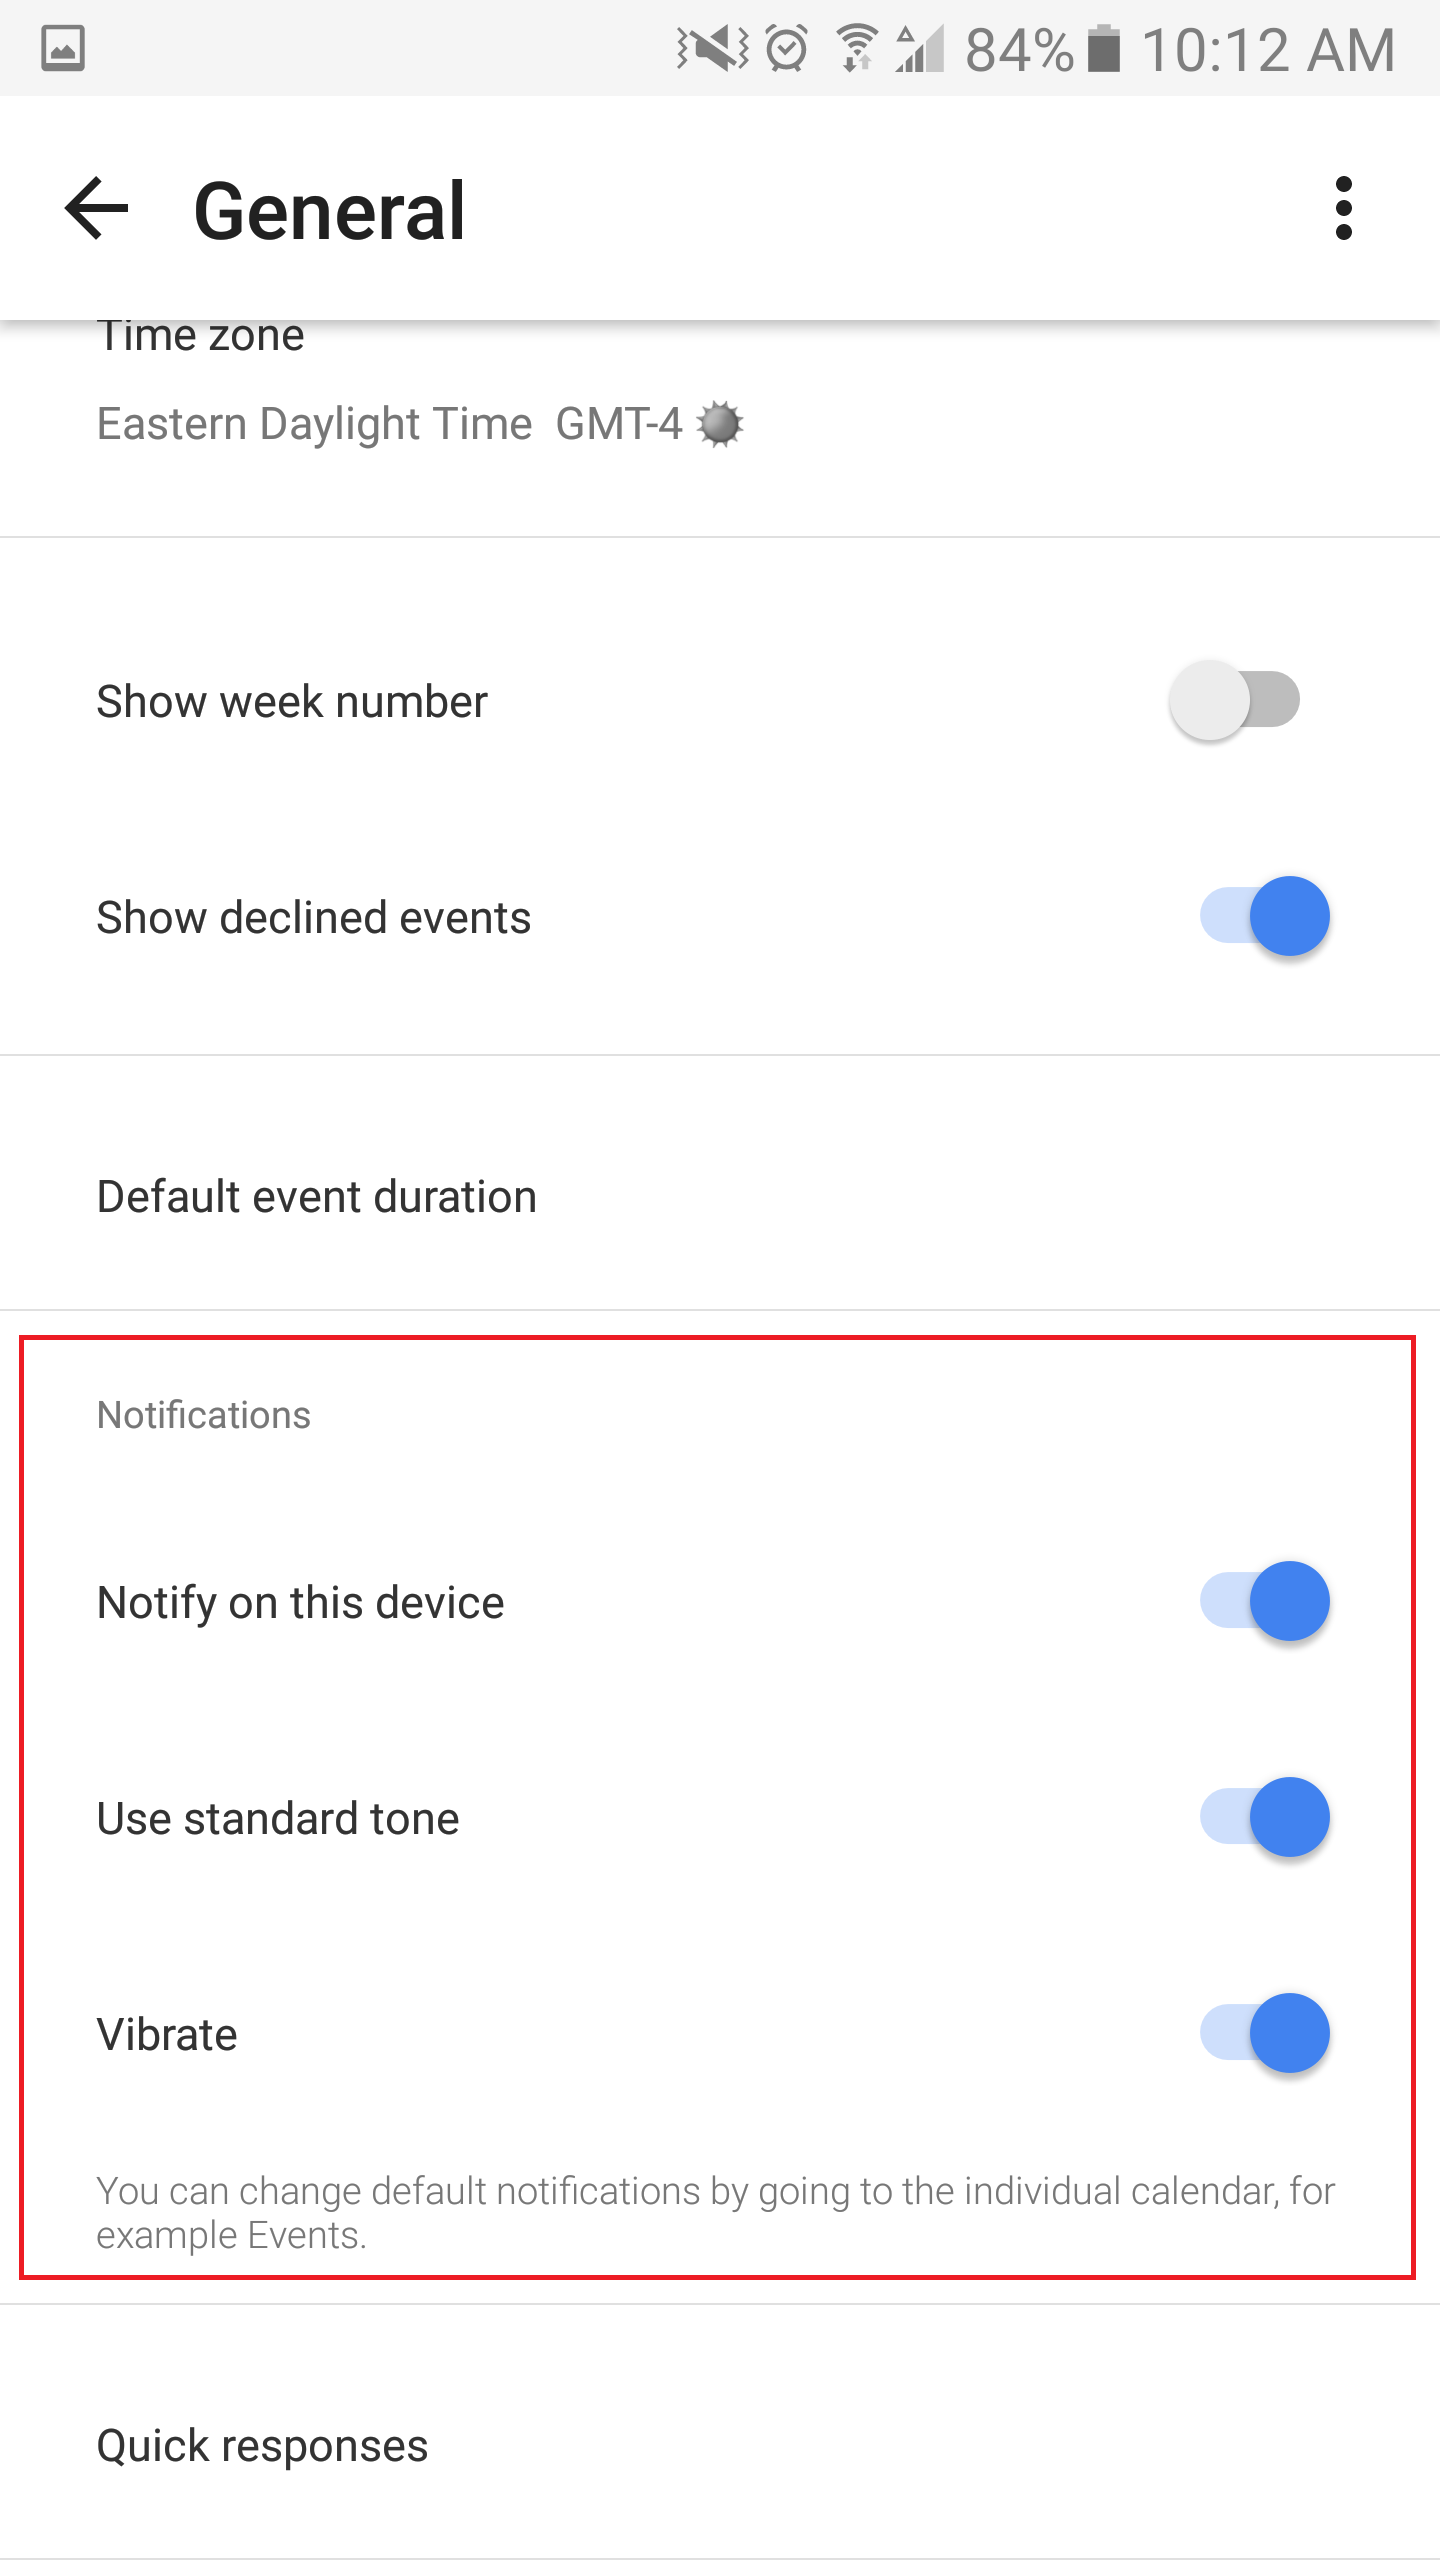 Android calendar app General settings display